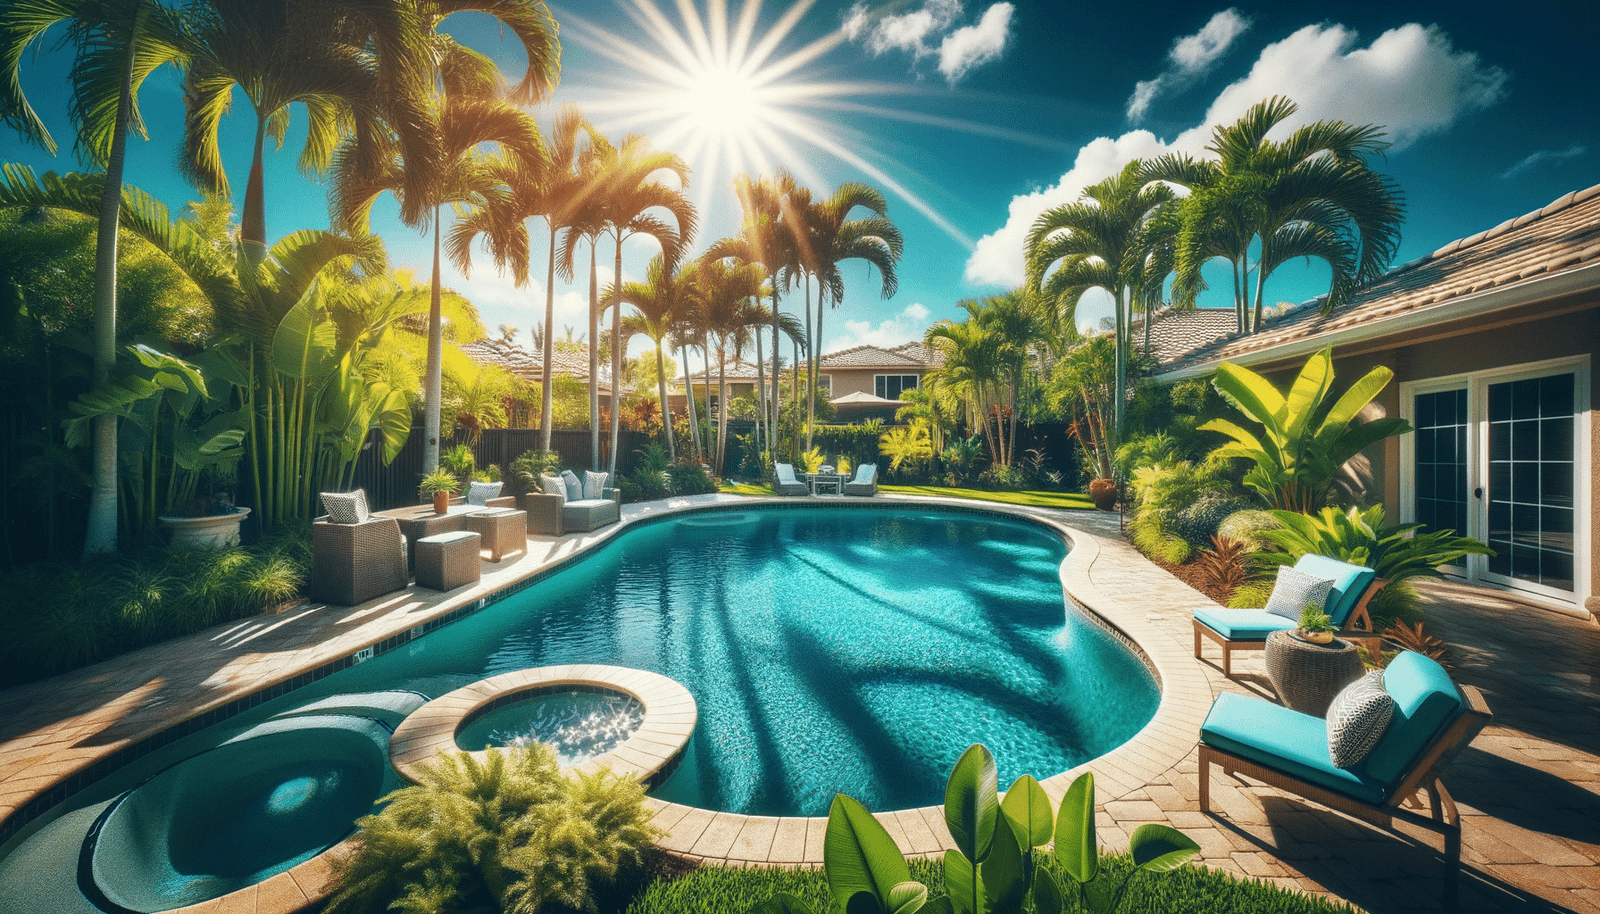 Pool Resurfacing in Fort Lauderdale